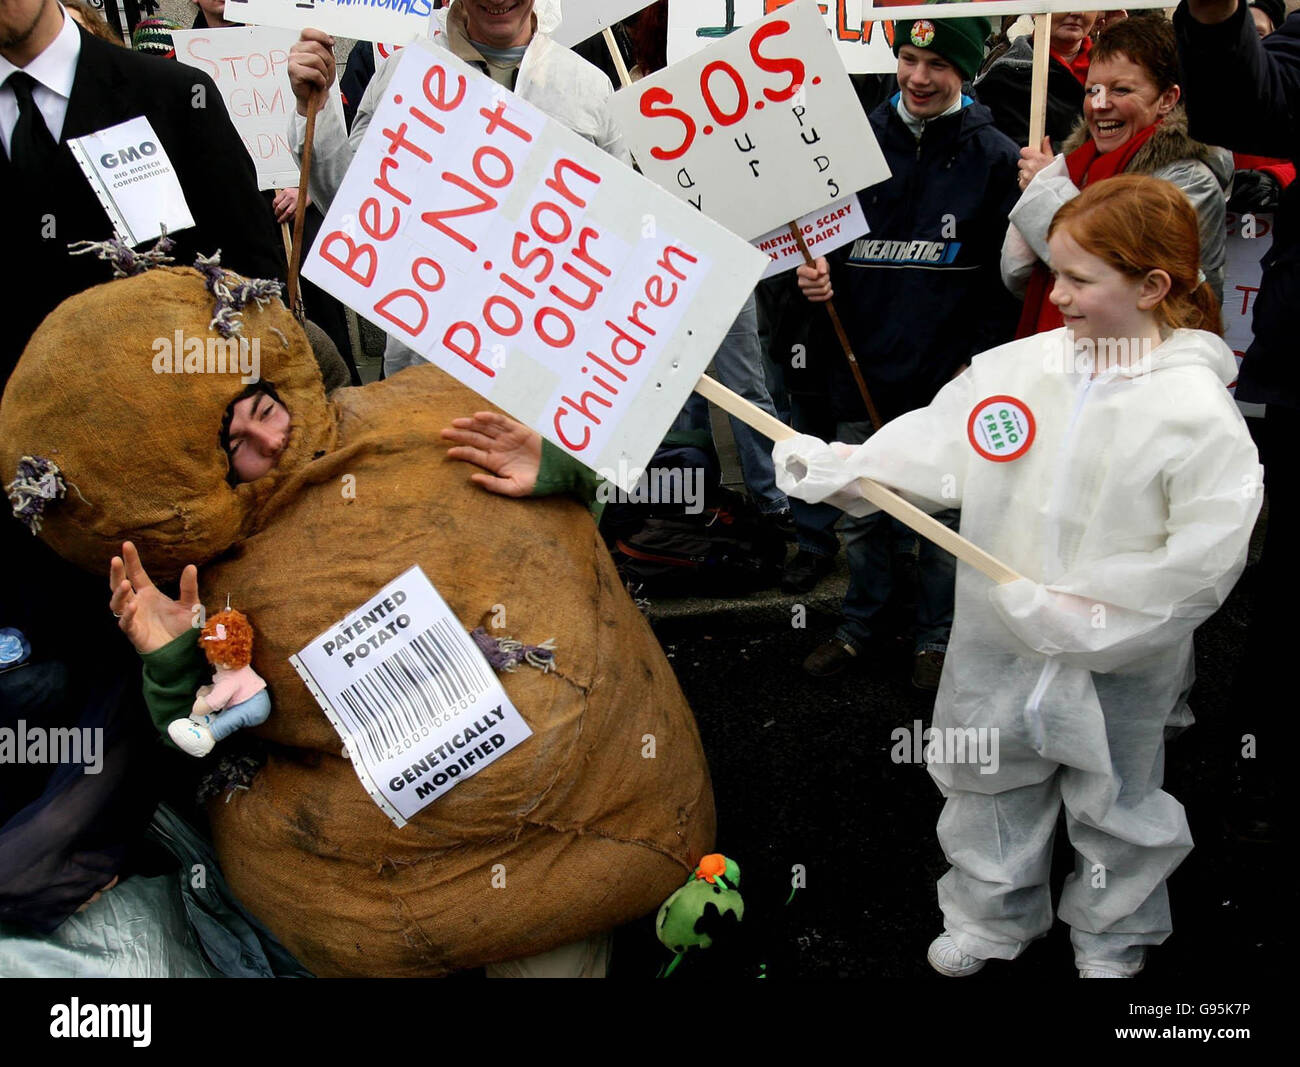 Alana Geoghegan di Co Leitrim attacca una patata geneticamente modificata durante una protesta anti-GM al di fuori del parlamento irlandese a Dublino, mercoledì 22 febbraio 2006 STAMPA ASSOCIATION Photo. Il credito fotografico dovrebbe essere: Niall Carson/PA Foto Stock